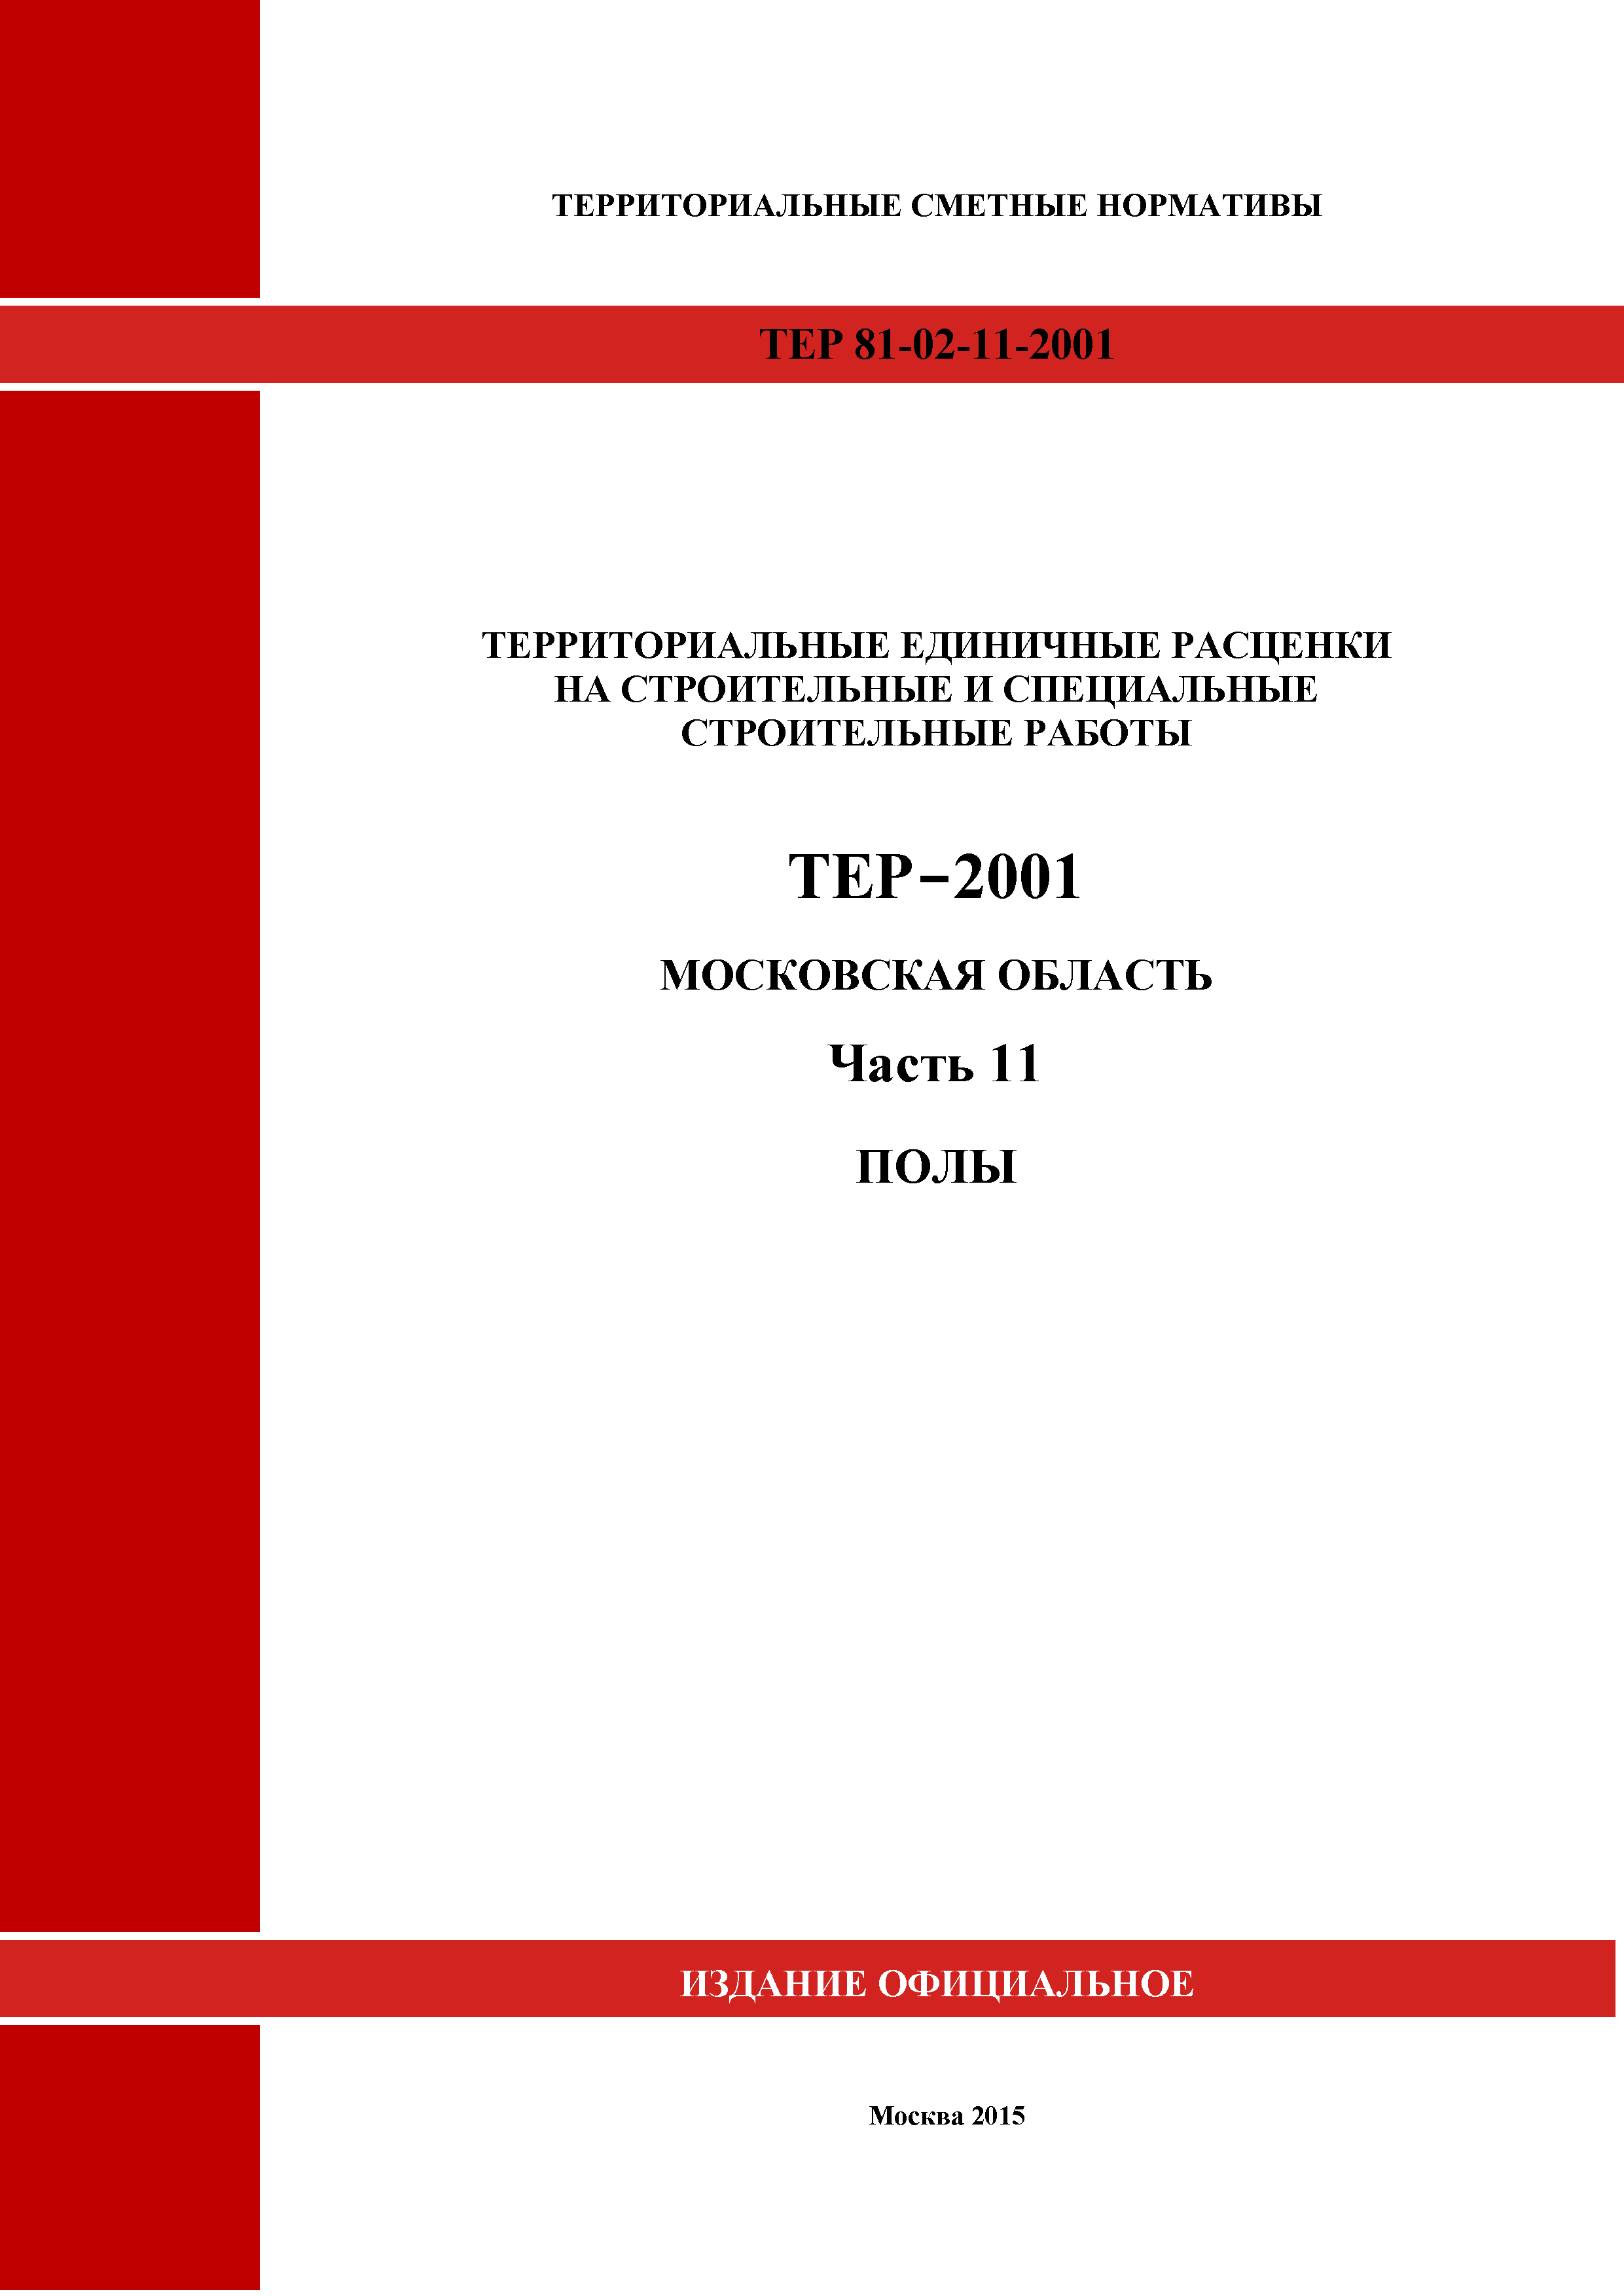 ТЕР 11-2001 Московской области